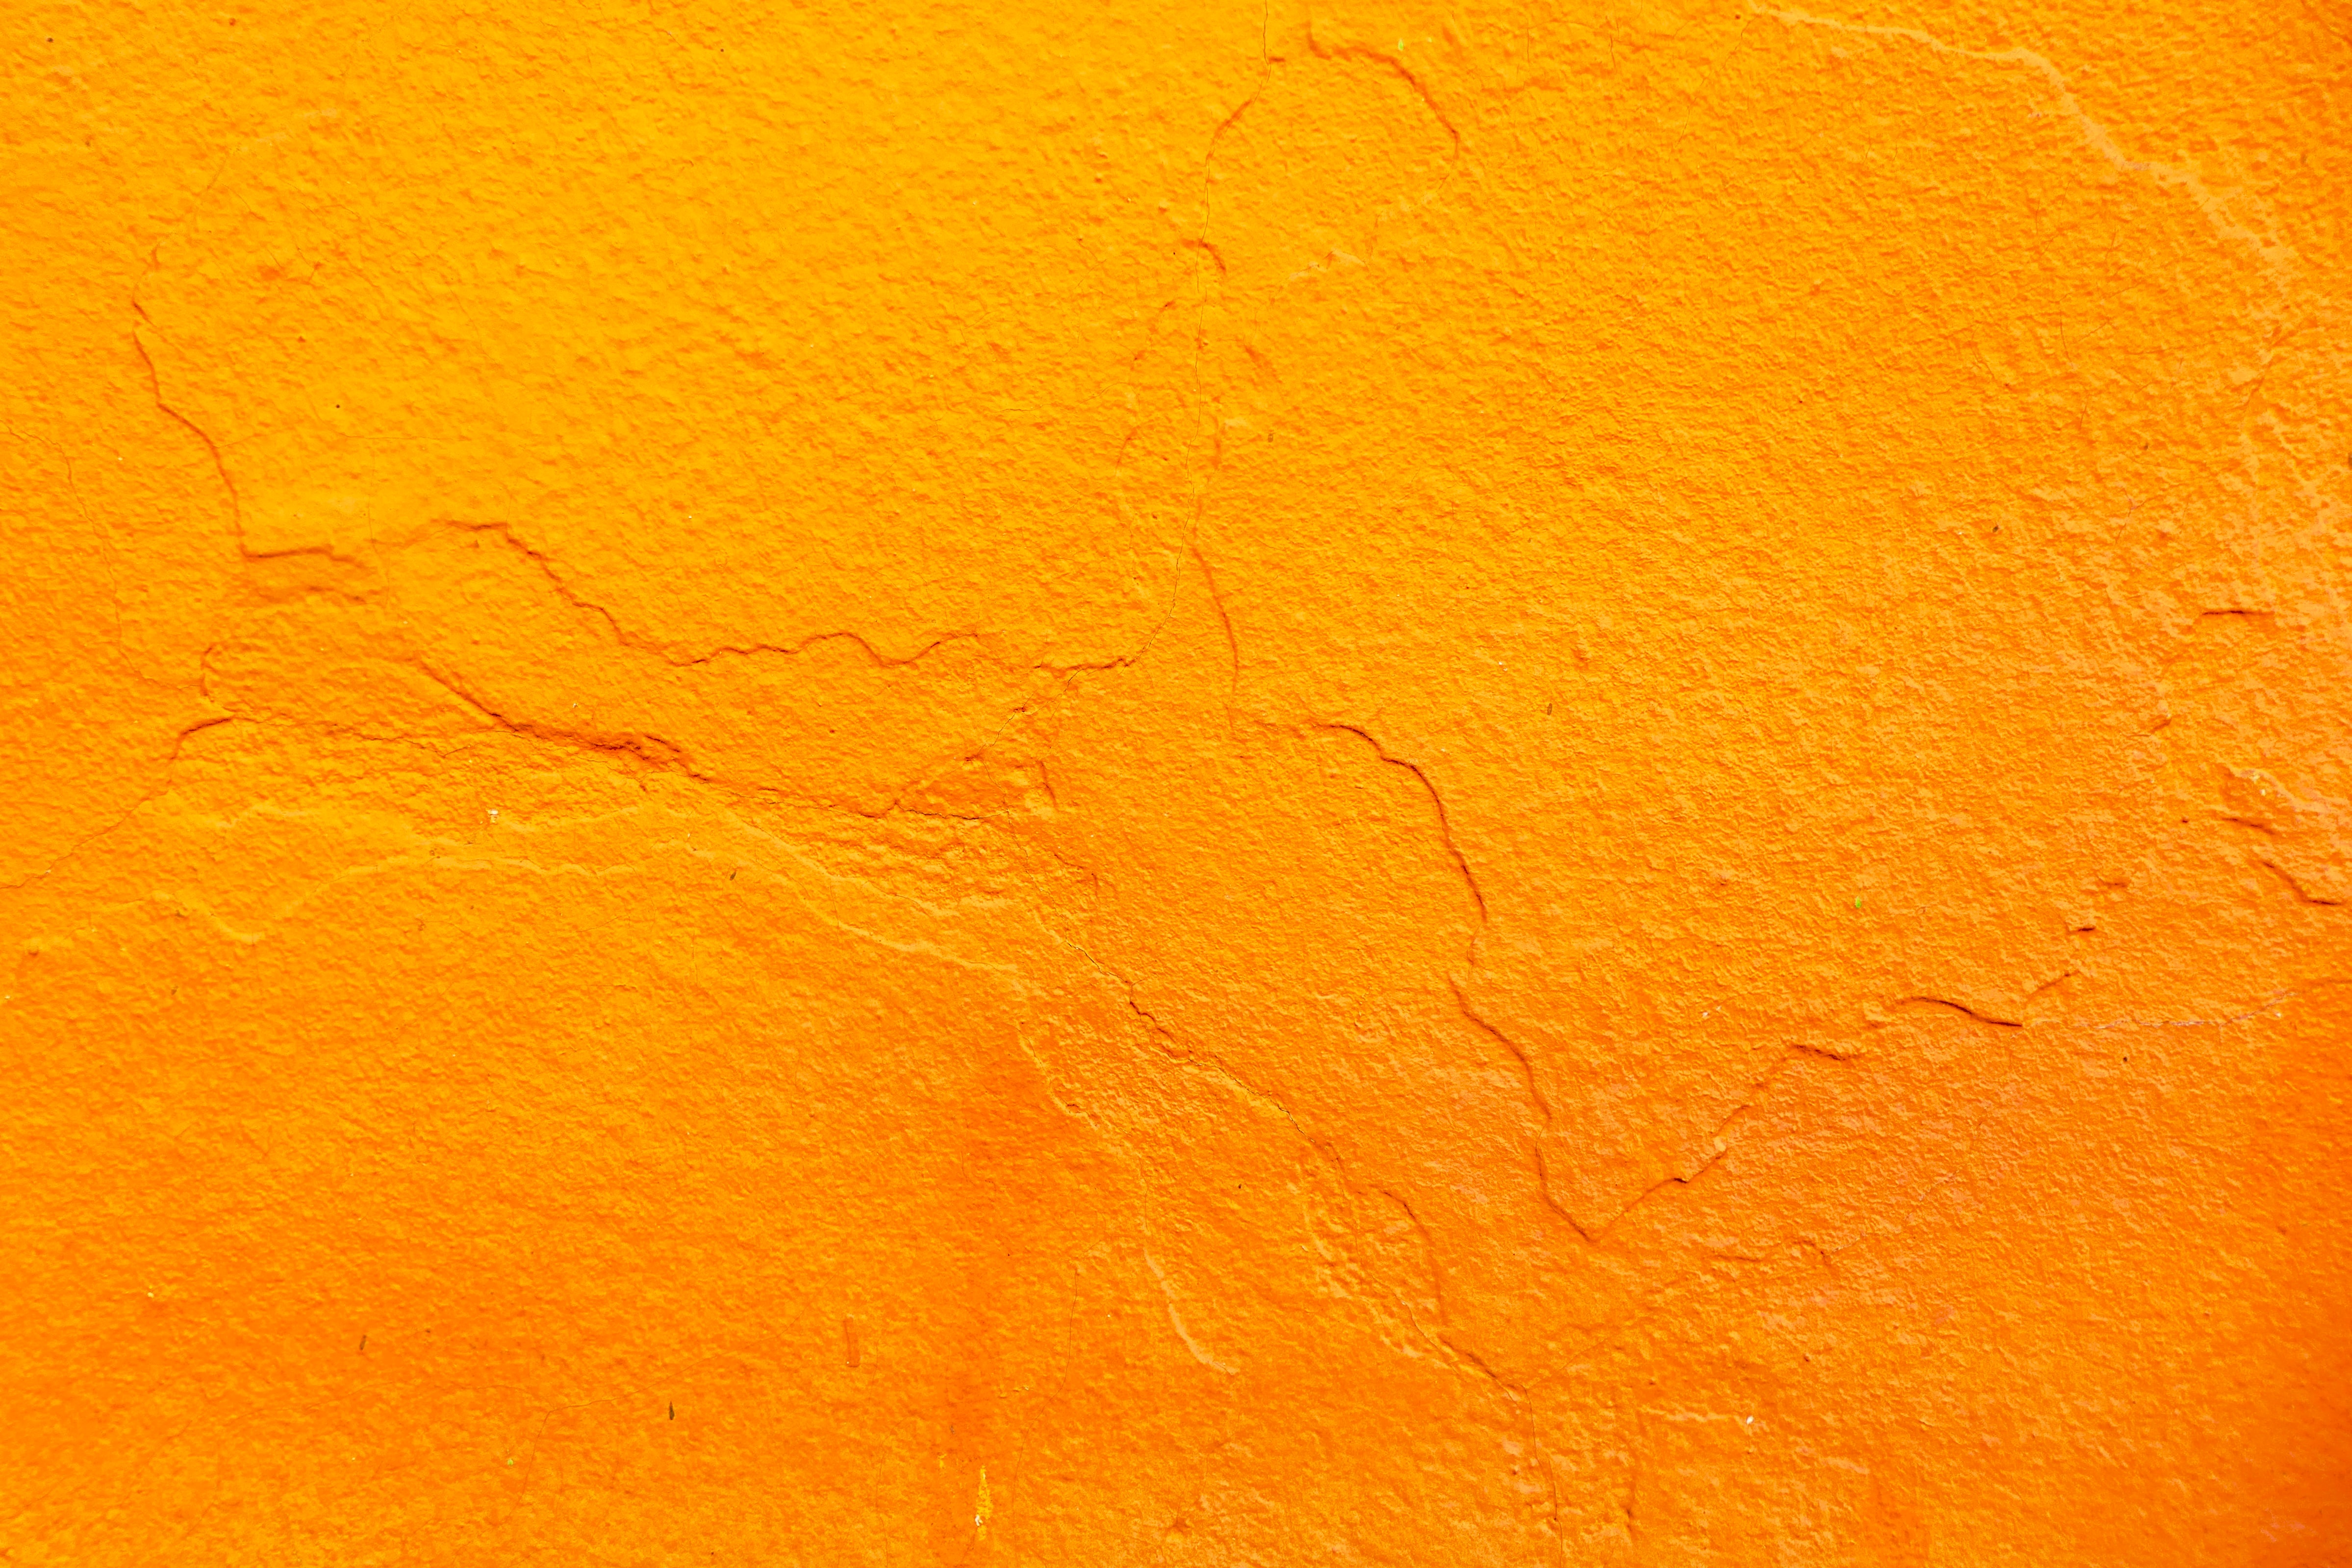 The Psychology of Orange Color